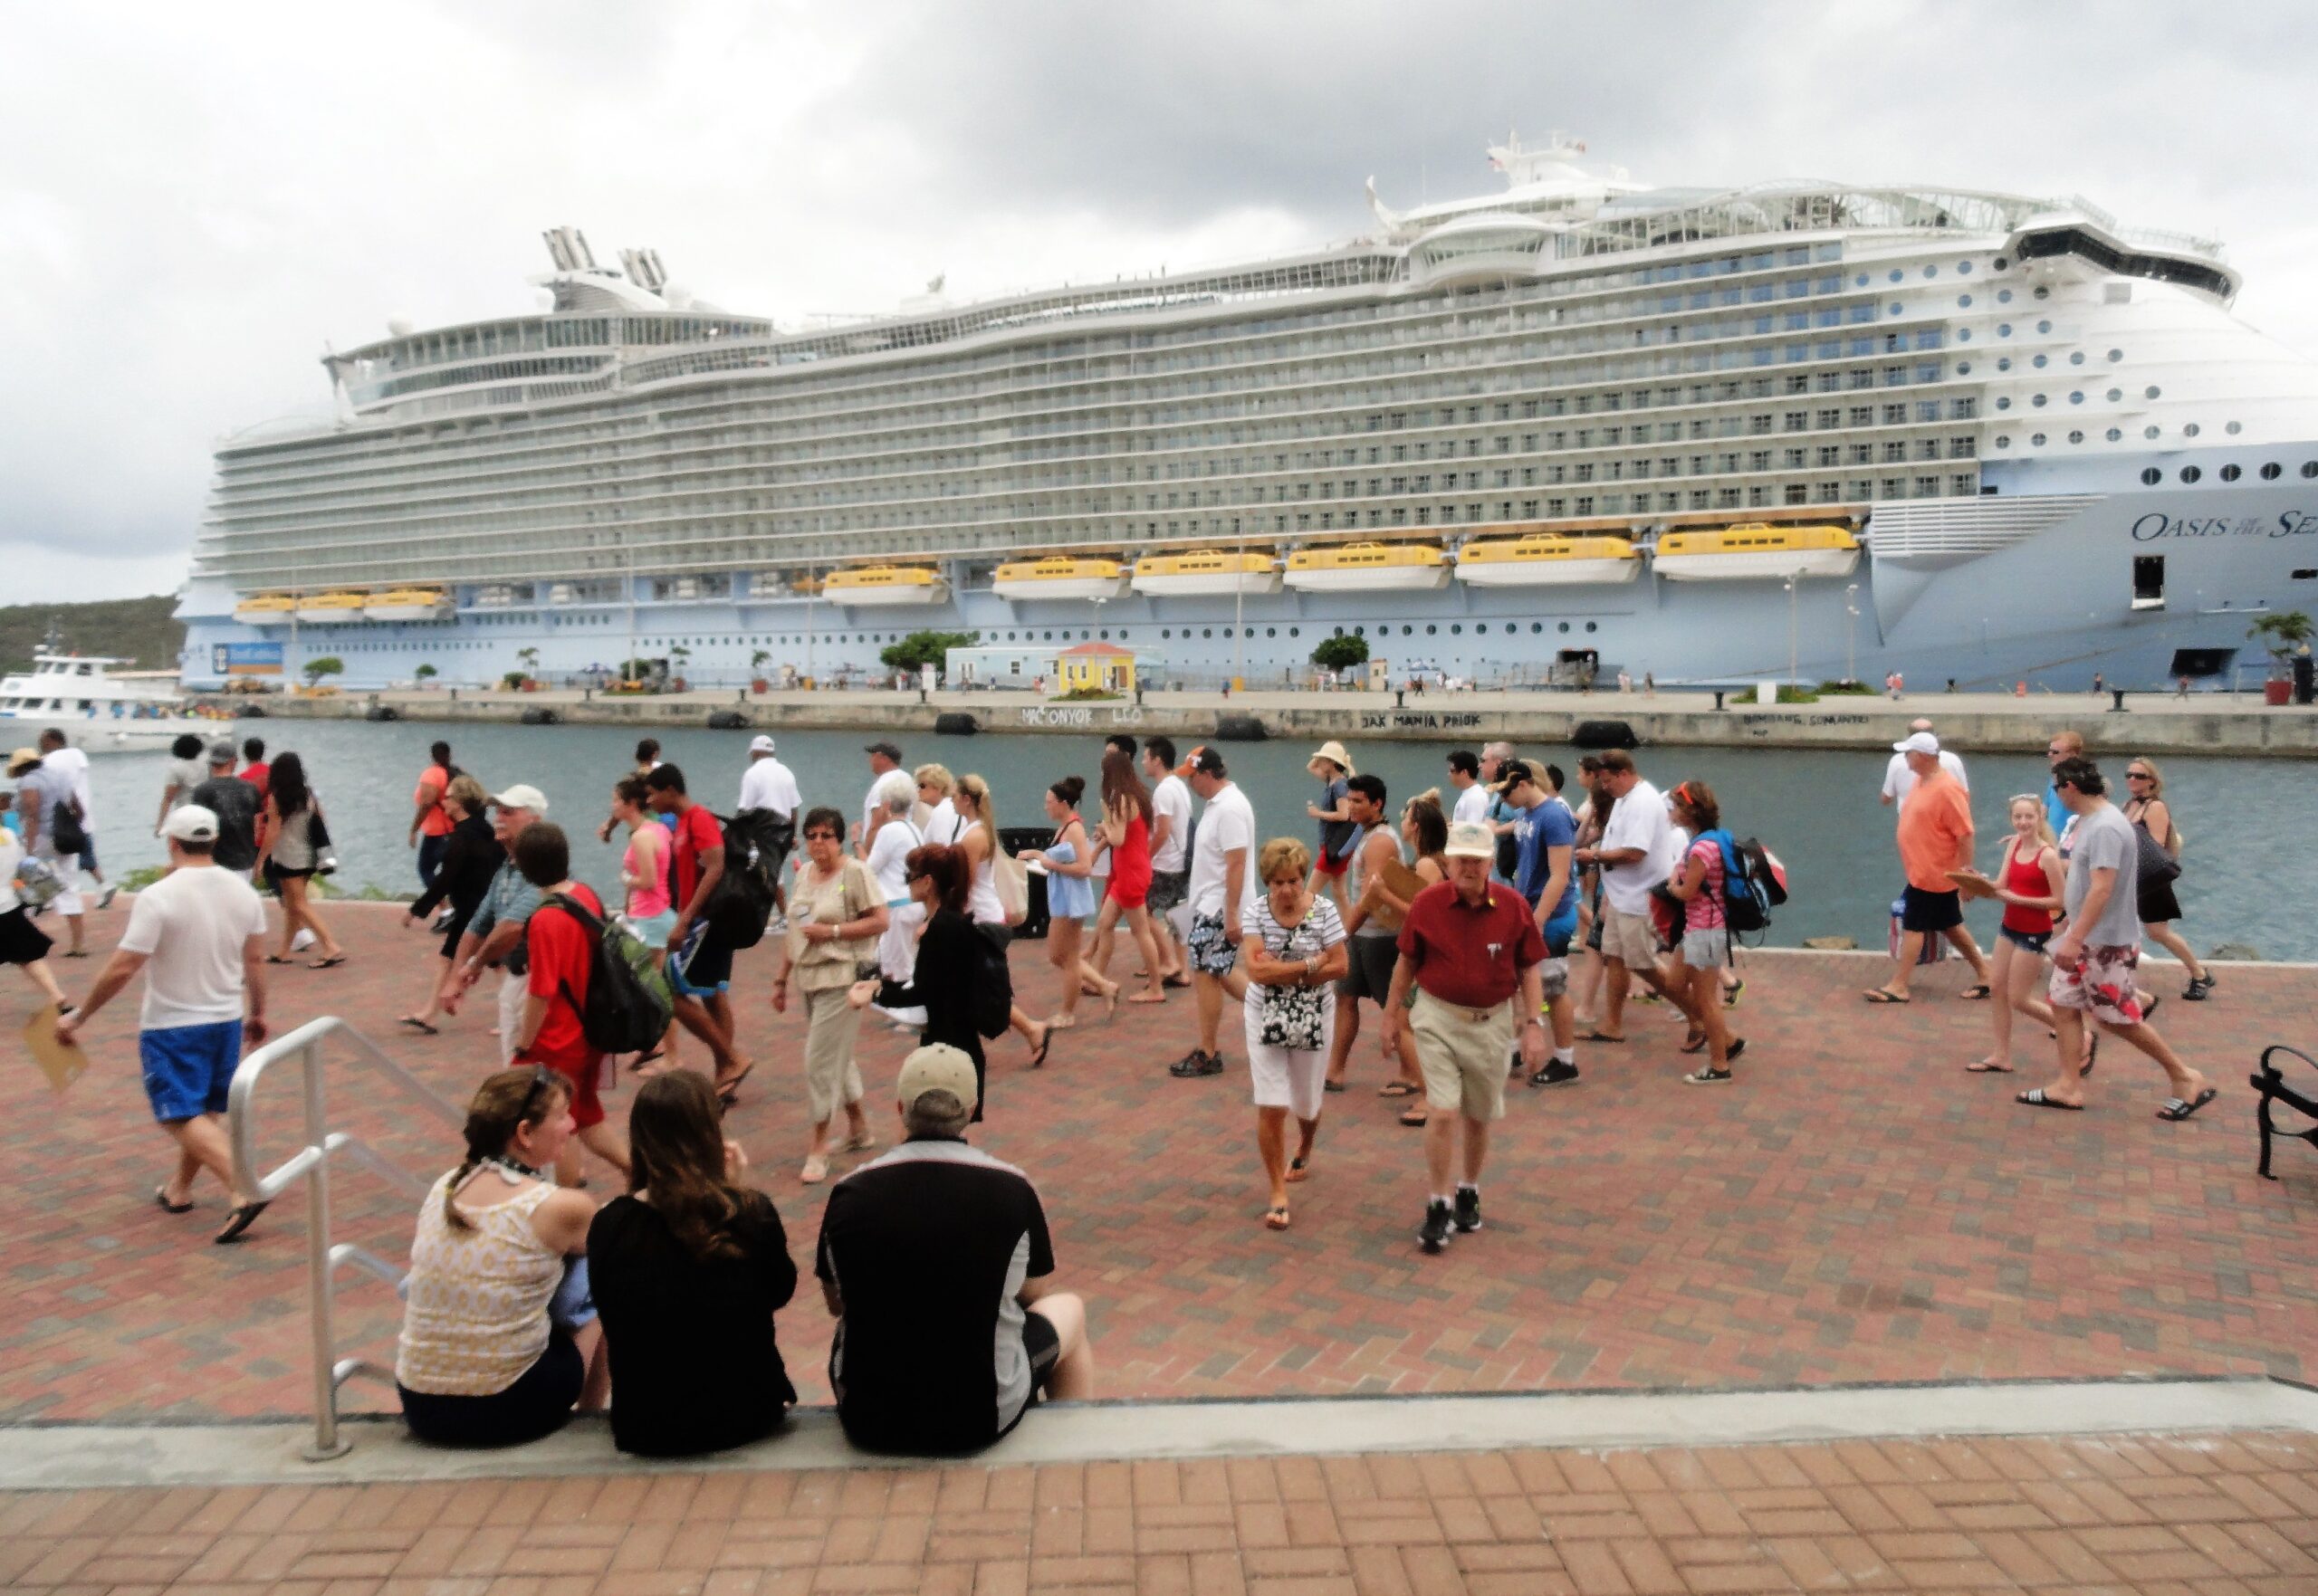 st-thomas-crown-bay-royal-caribbean-cruise-ship